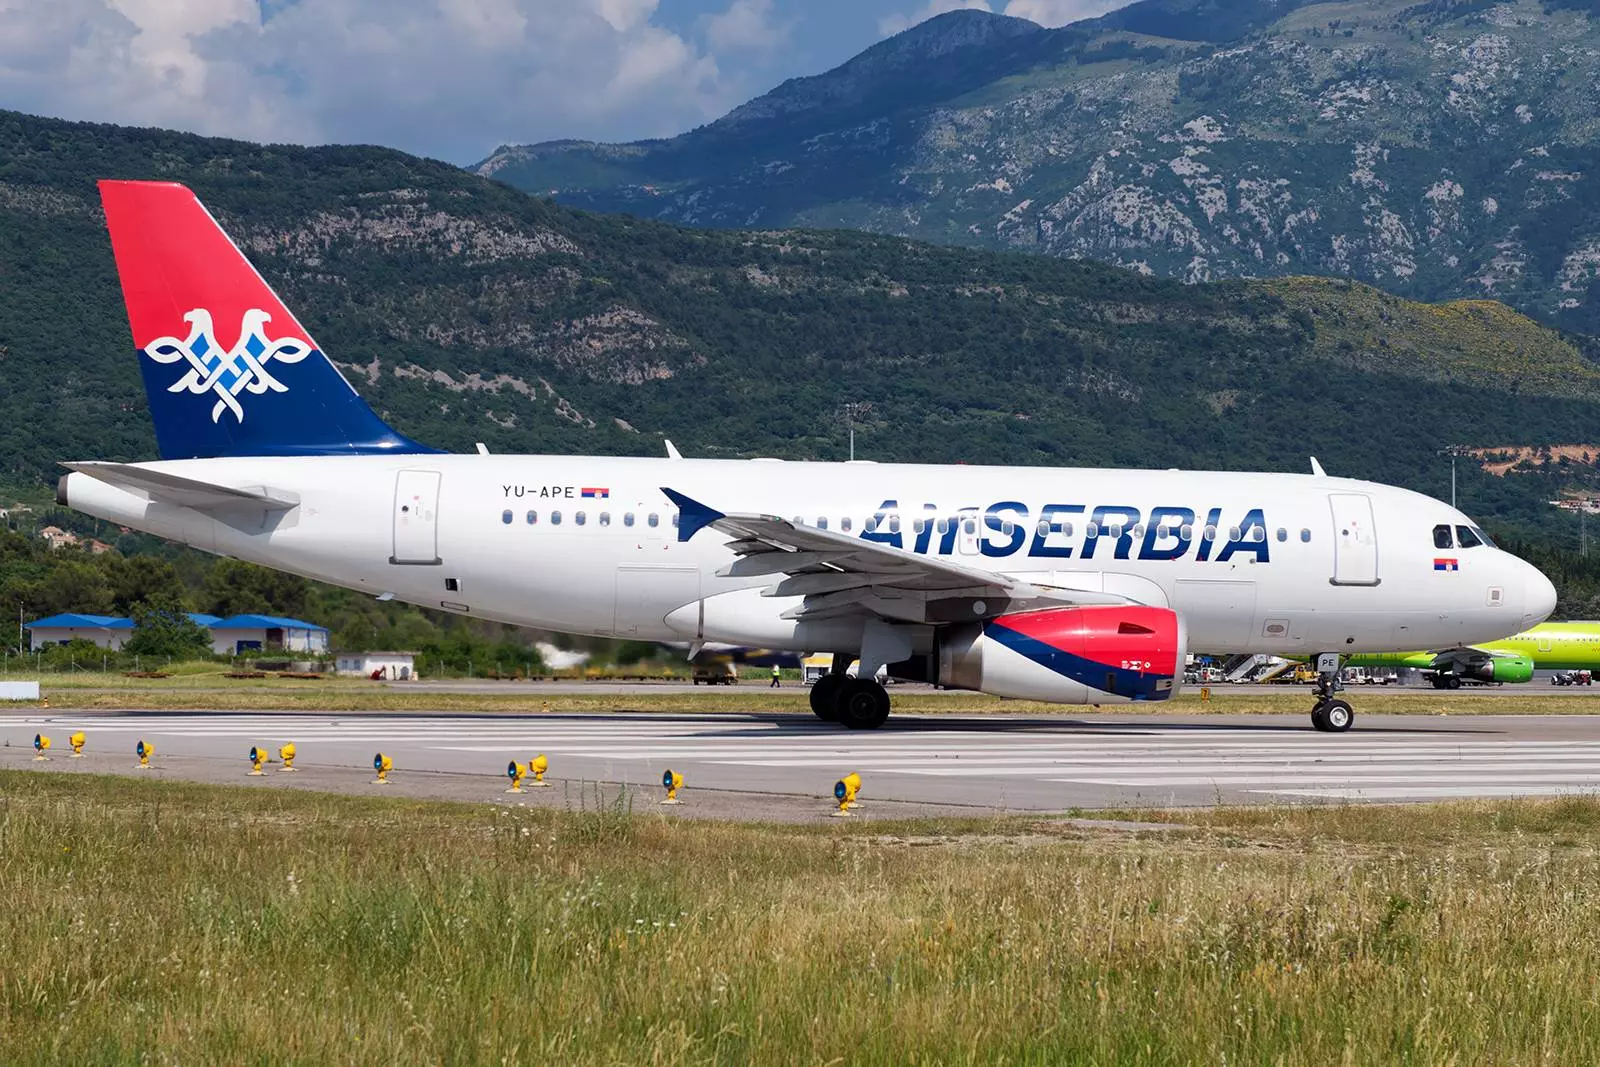 Air serbia